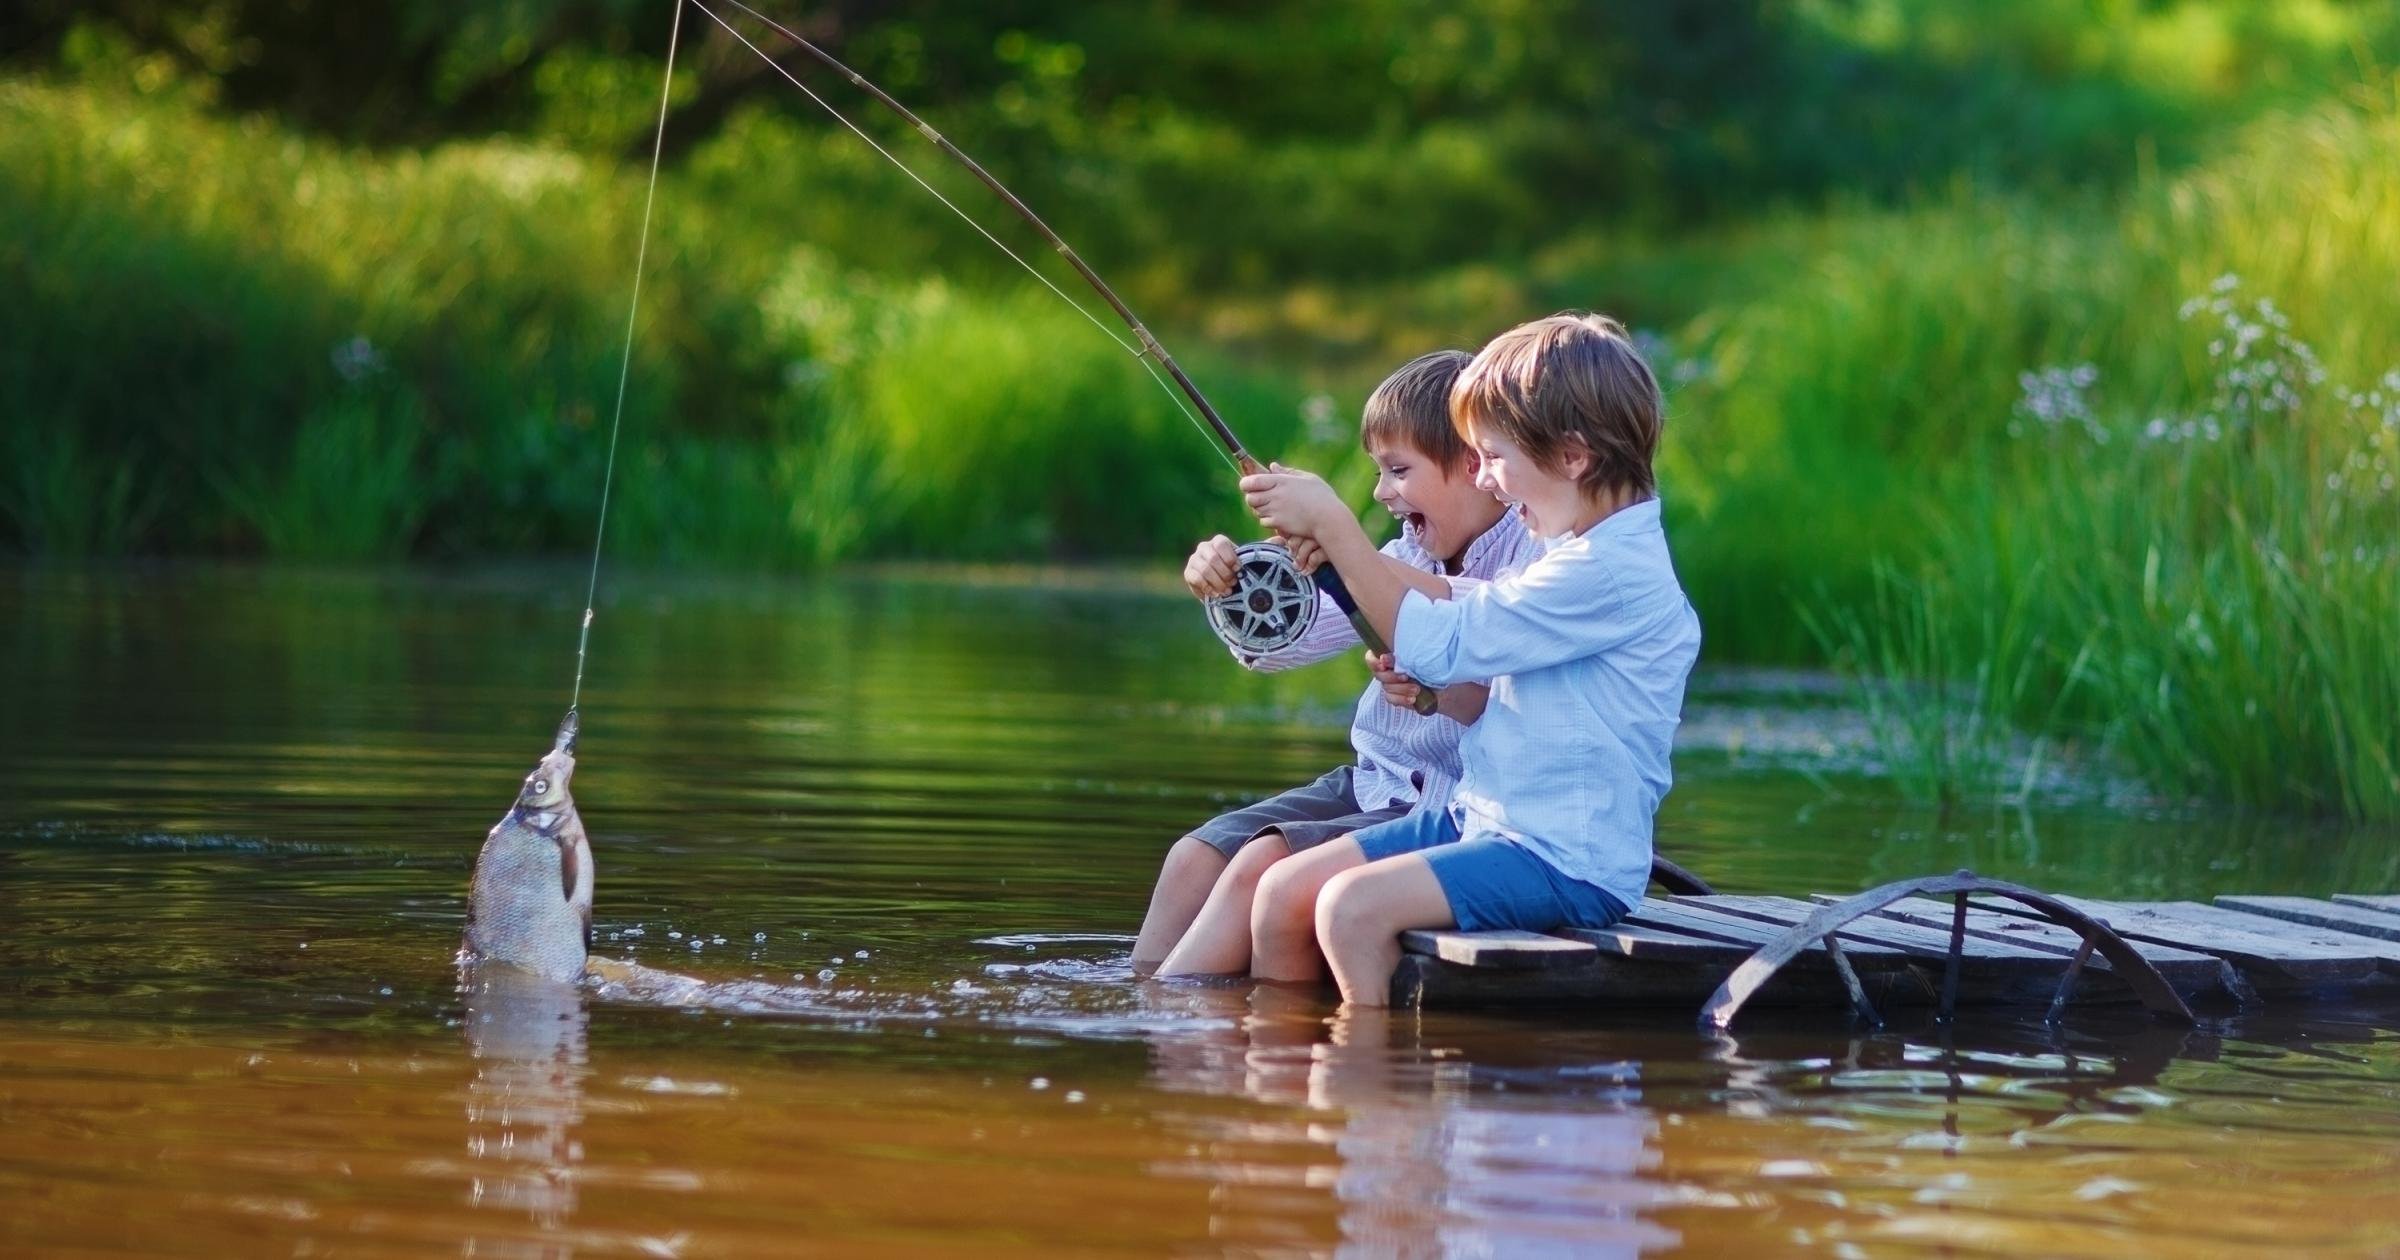 Лове на лету. Лето рыбалка. Рыбалка летом. Мальчик с удочкой. Детская фотосессия рыбалка.